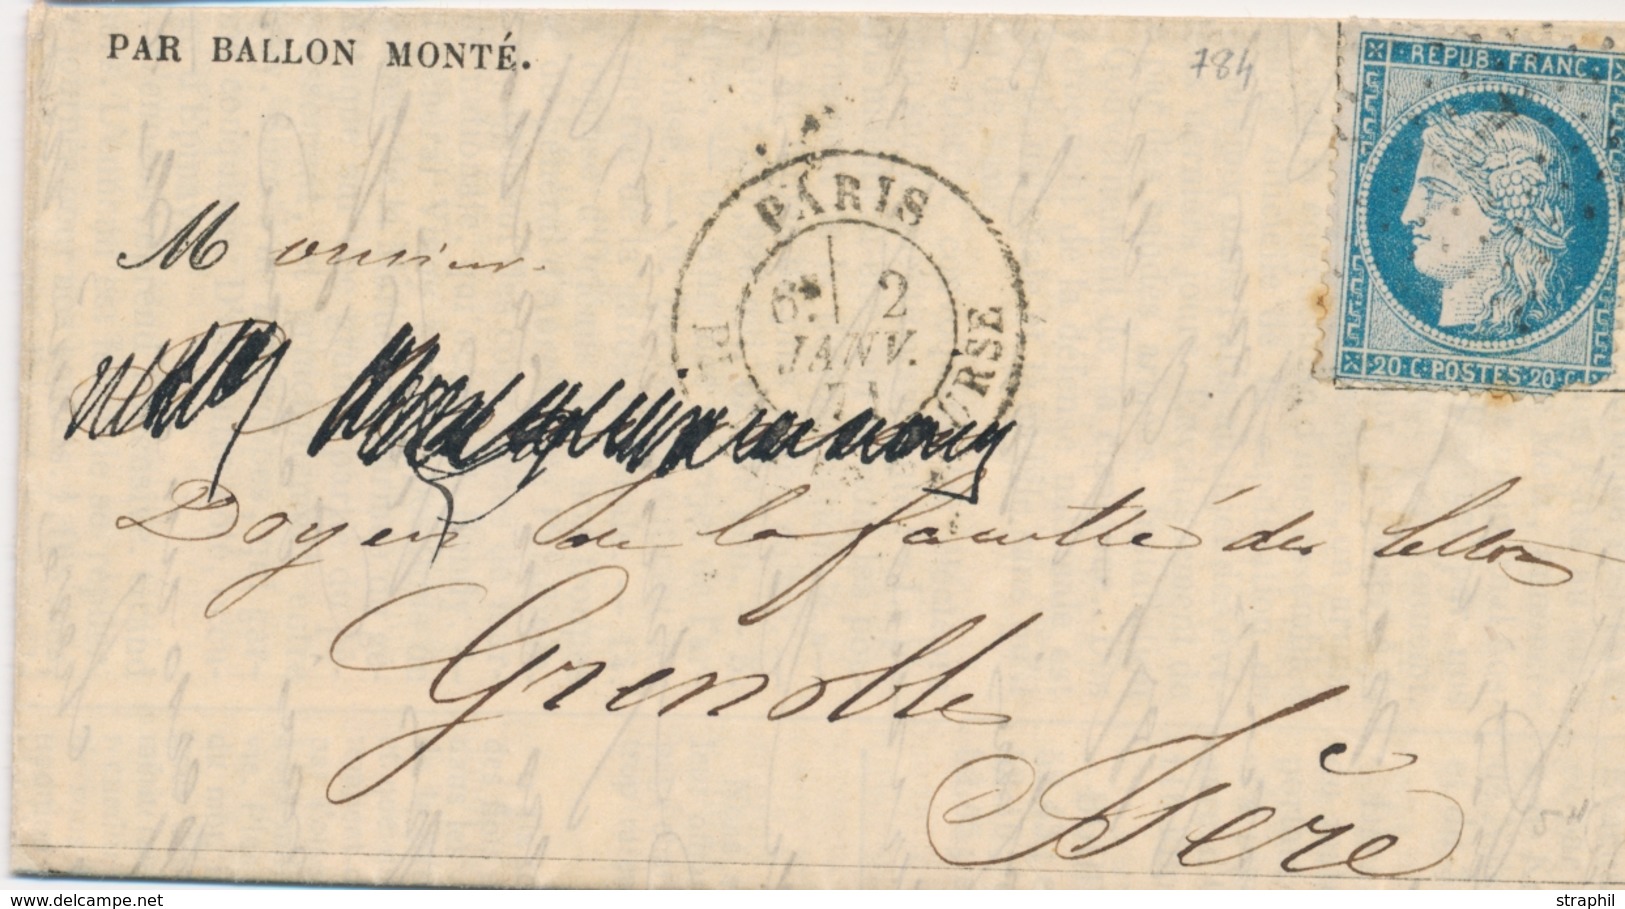 LAC BALLONS MONTES - LAC - LE NEWTON - Gazette Absents N°21 - Etoile Sur N°37 (défect.) - CàD Paris Place De La Bourse 2 - Krieg 1870